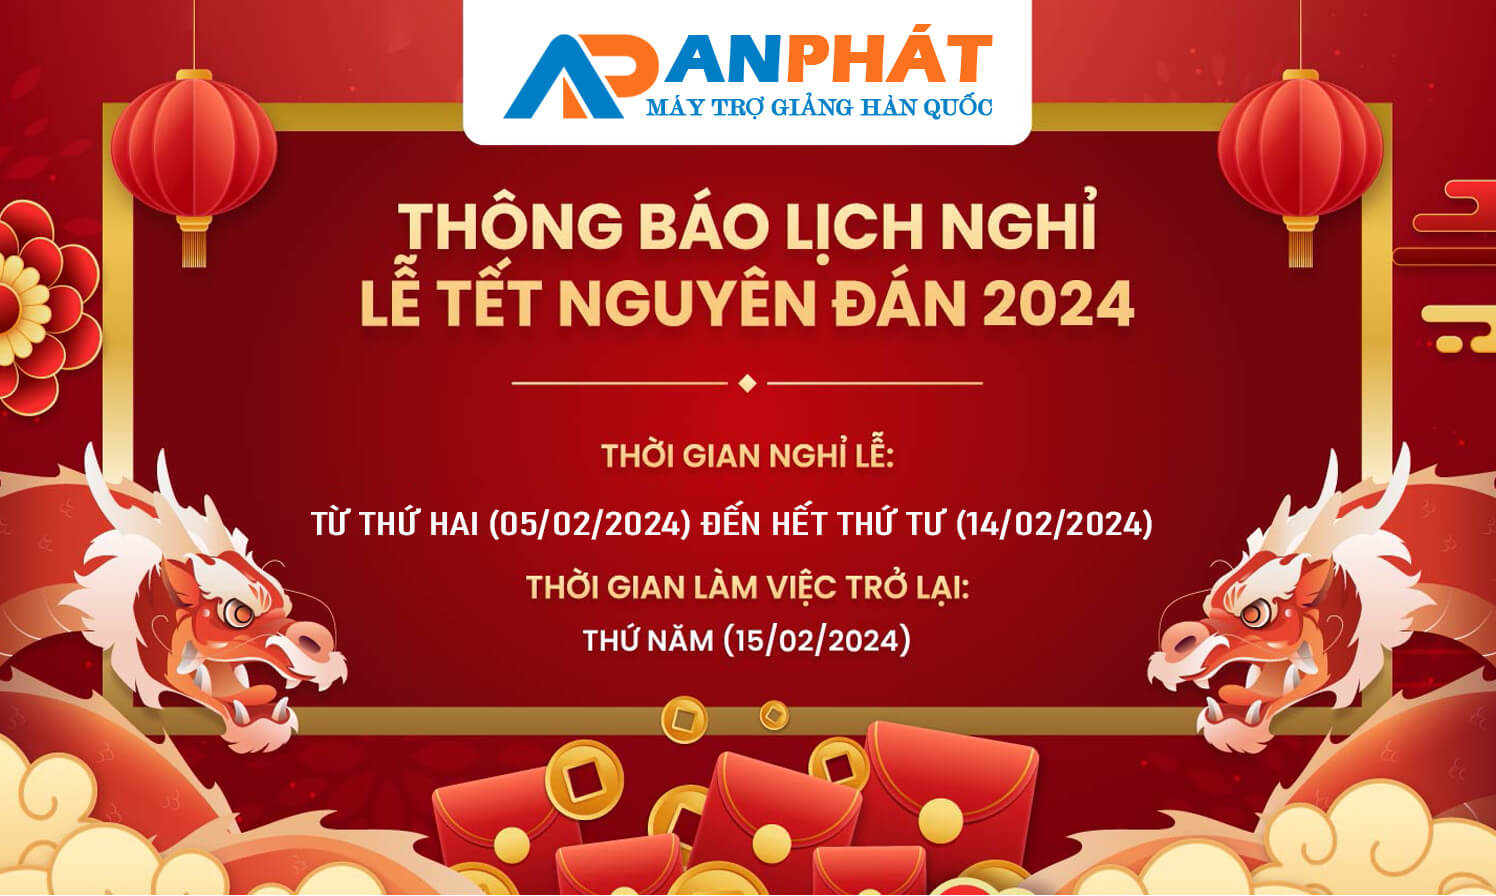 thong bao lich nghi tet Nguyen dan 2024 - anphat